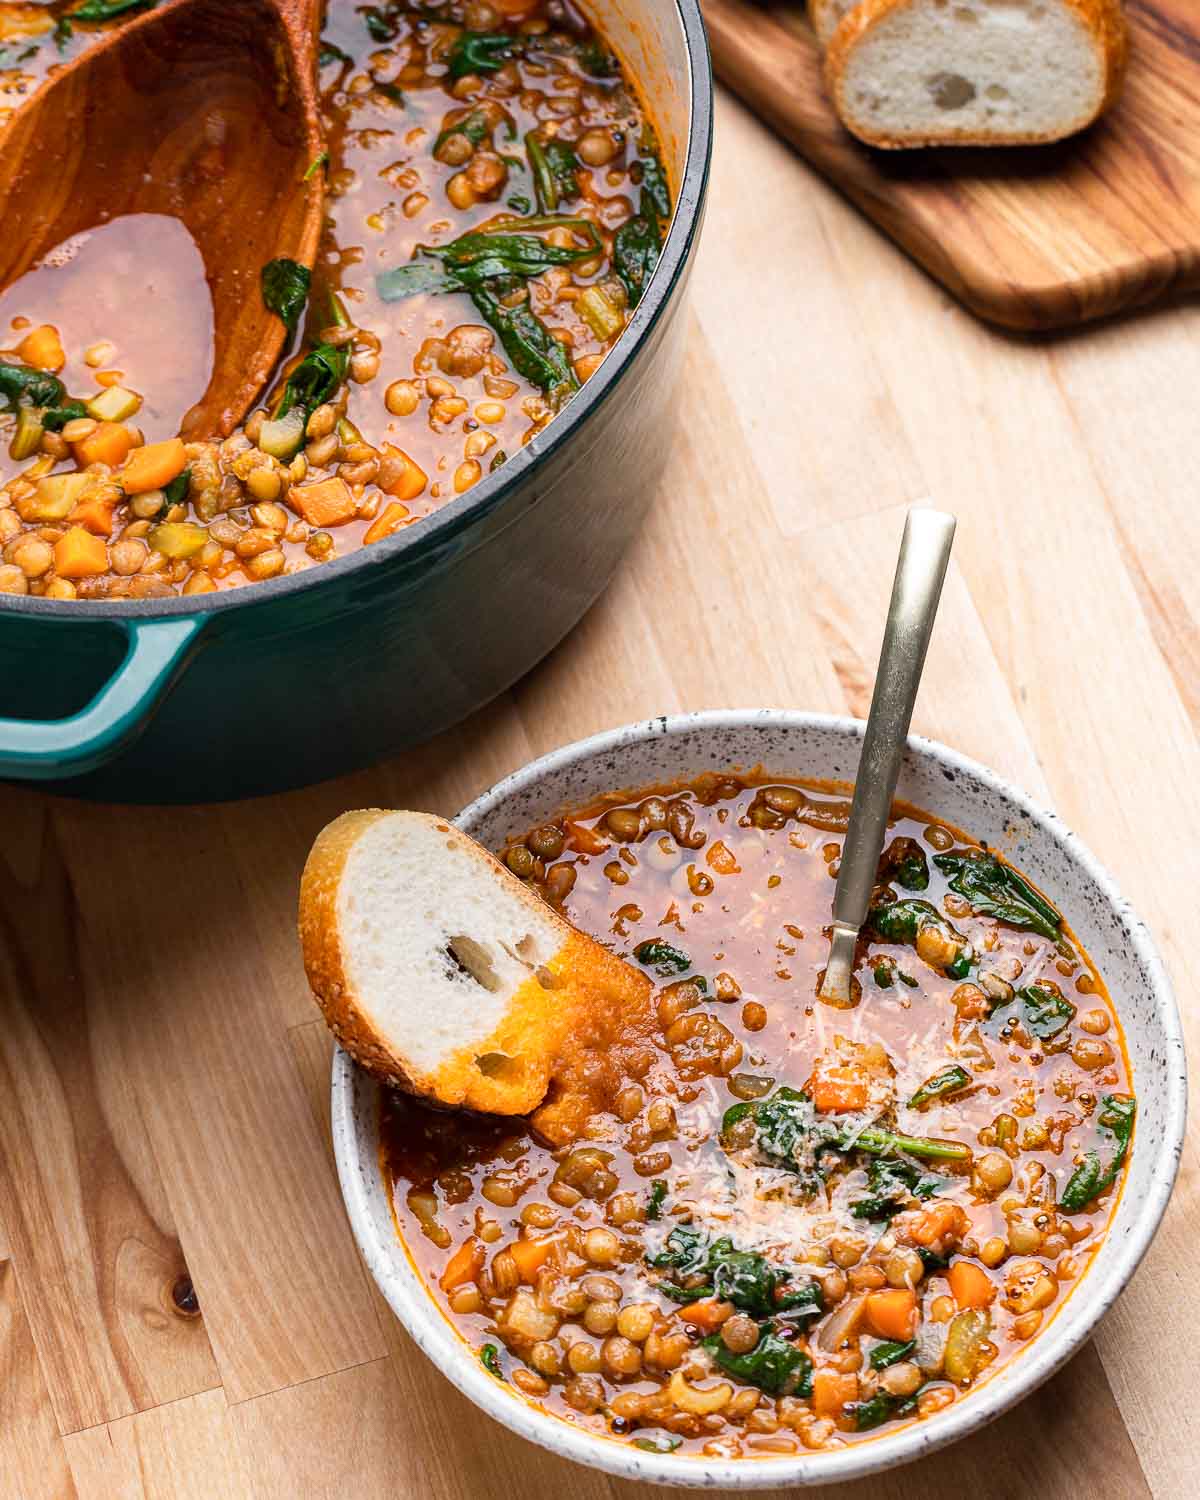 Pot and bowl of lentil soup.